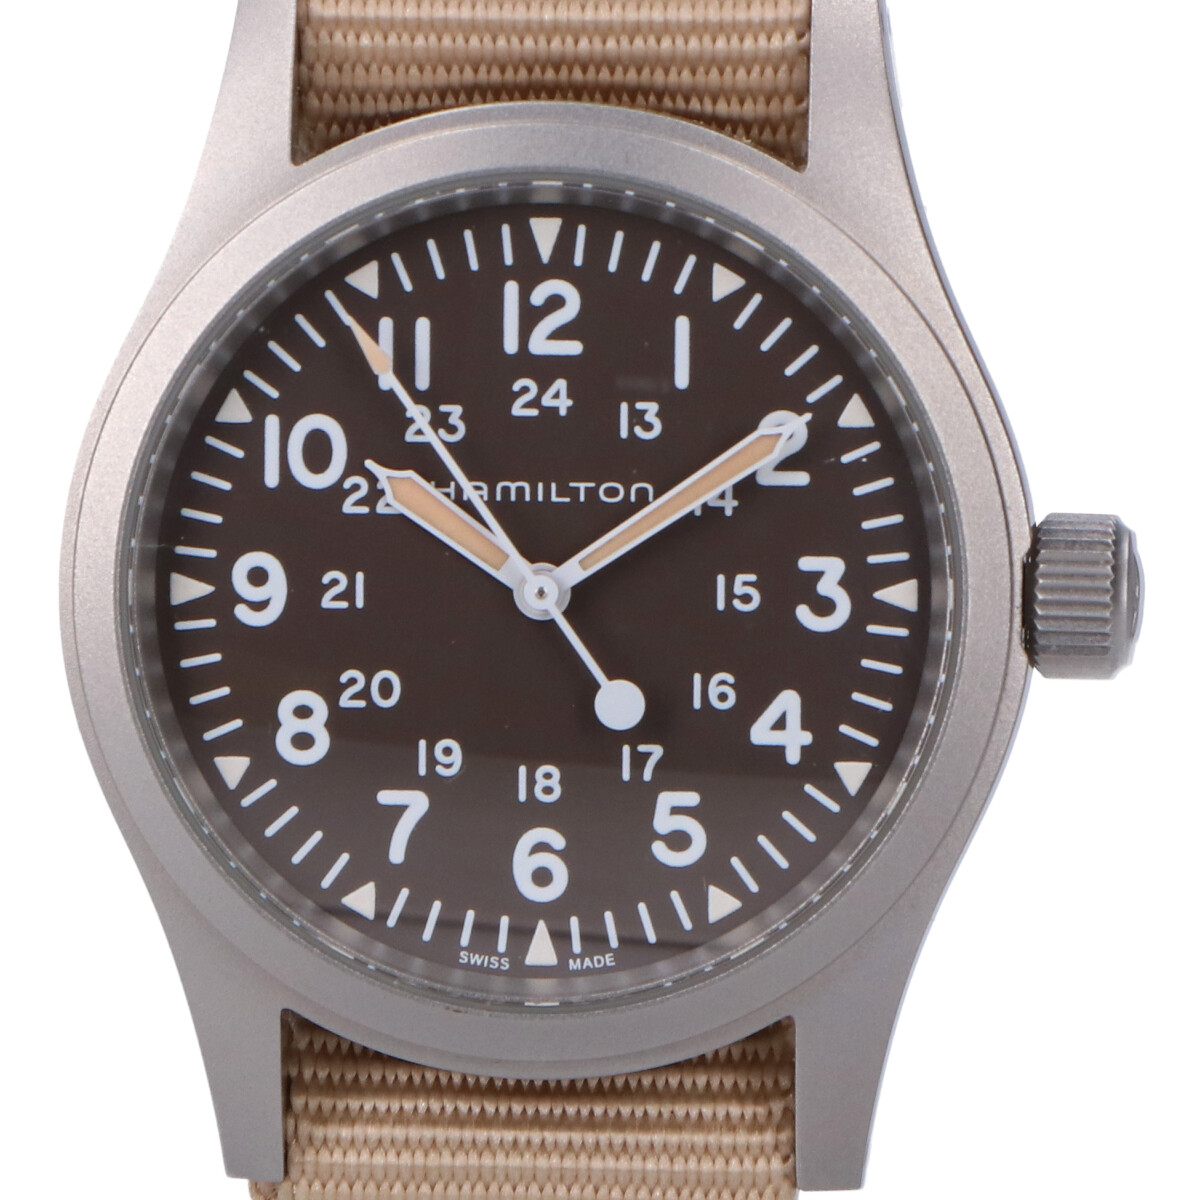 ハミルトンのH69439901 カーキフィールド MECHANICAL手巻き腕時計の買取実績です。